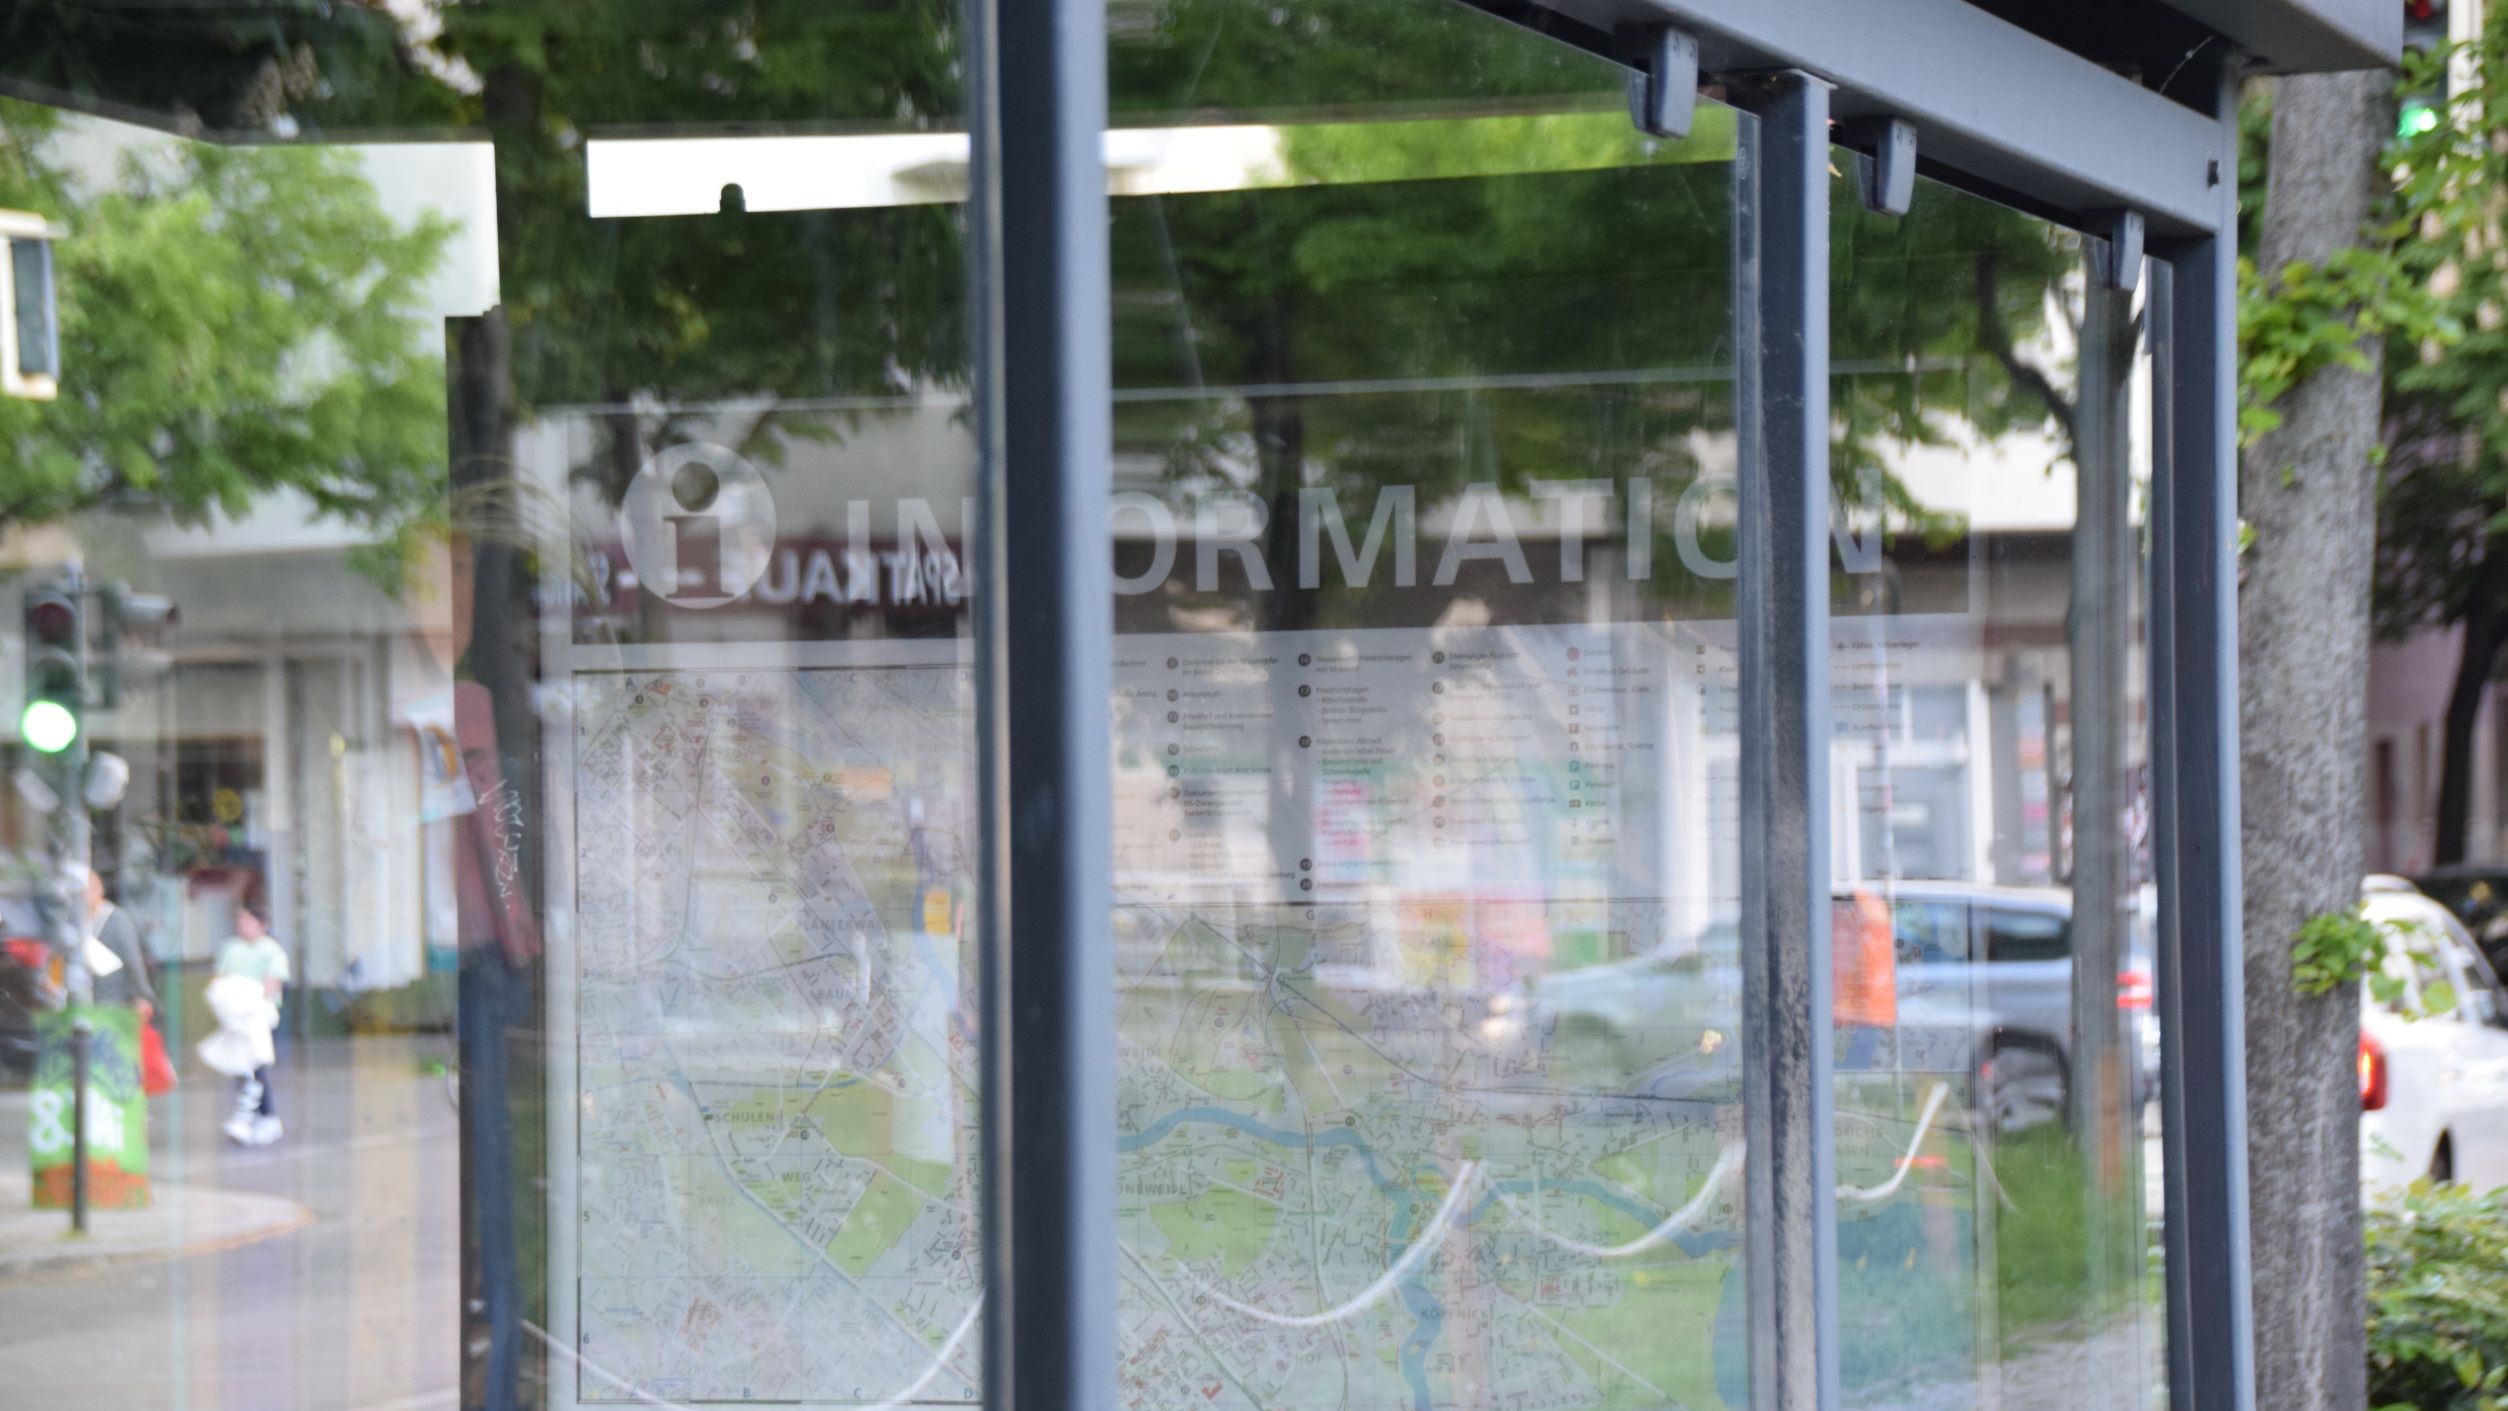 Plexiglasscheiben in BVG-Wartehuschen